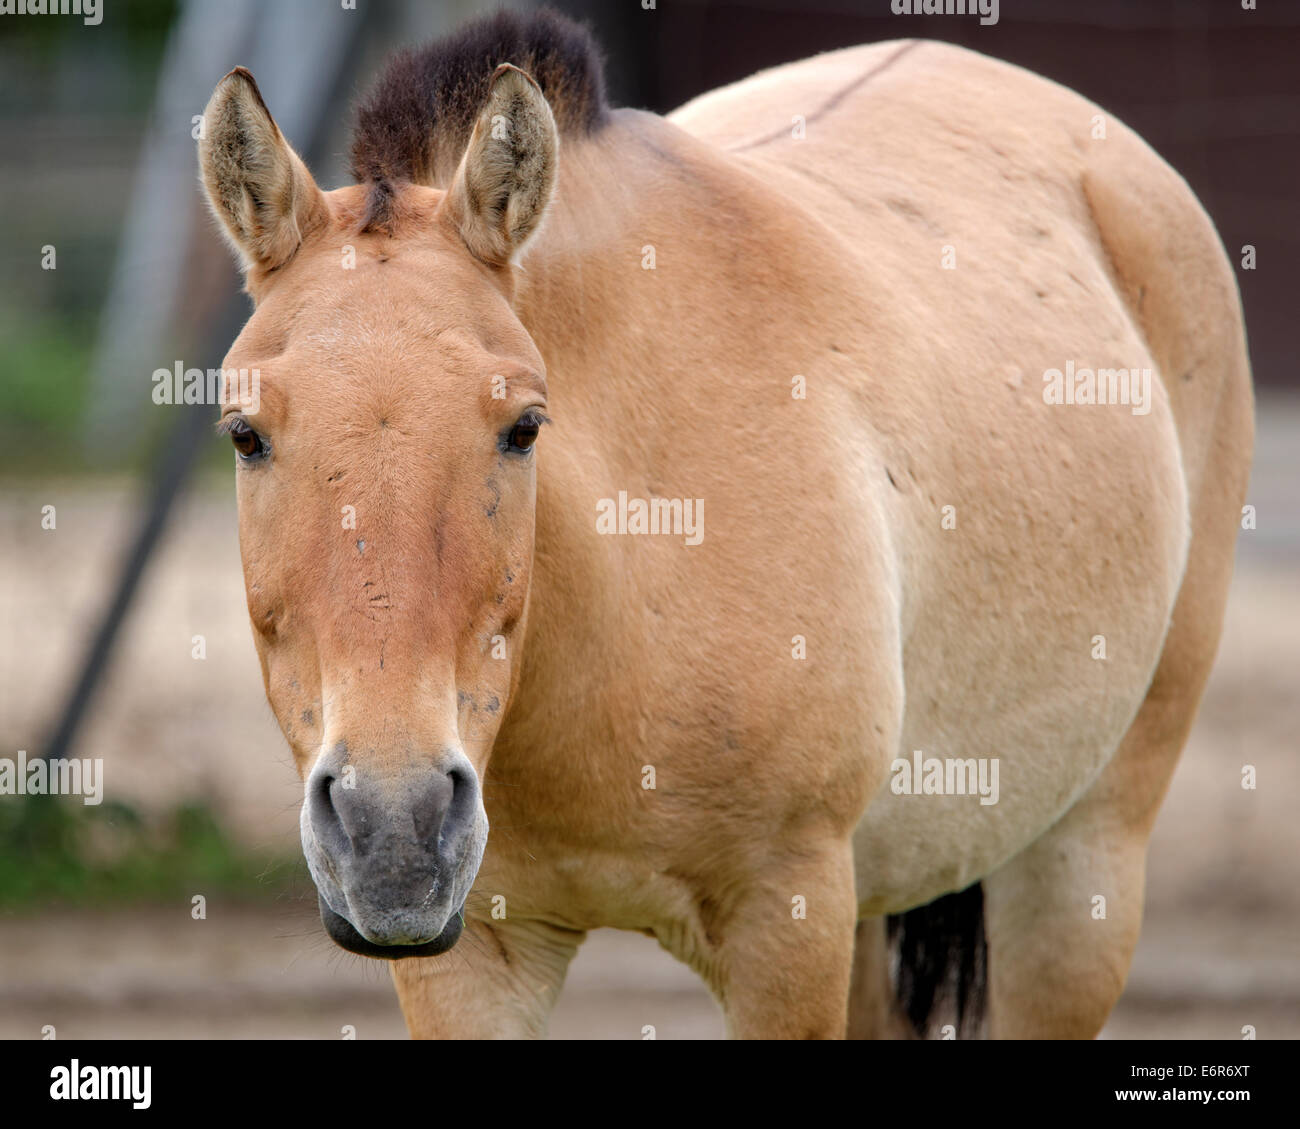 Le cheval de Przewalski ou Dzungarian cheval, est une sous-espèce rare et menacée de cheval sauvage (Equus ferus). Banque D'Images